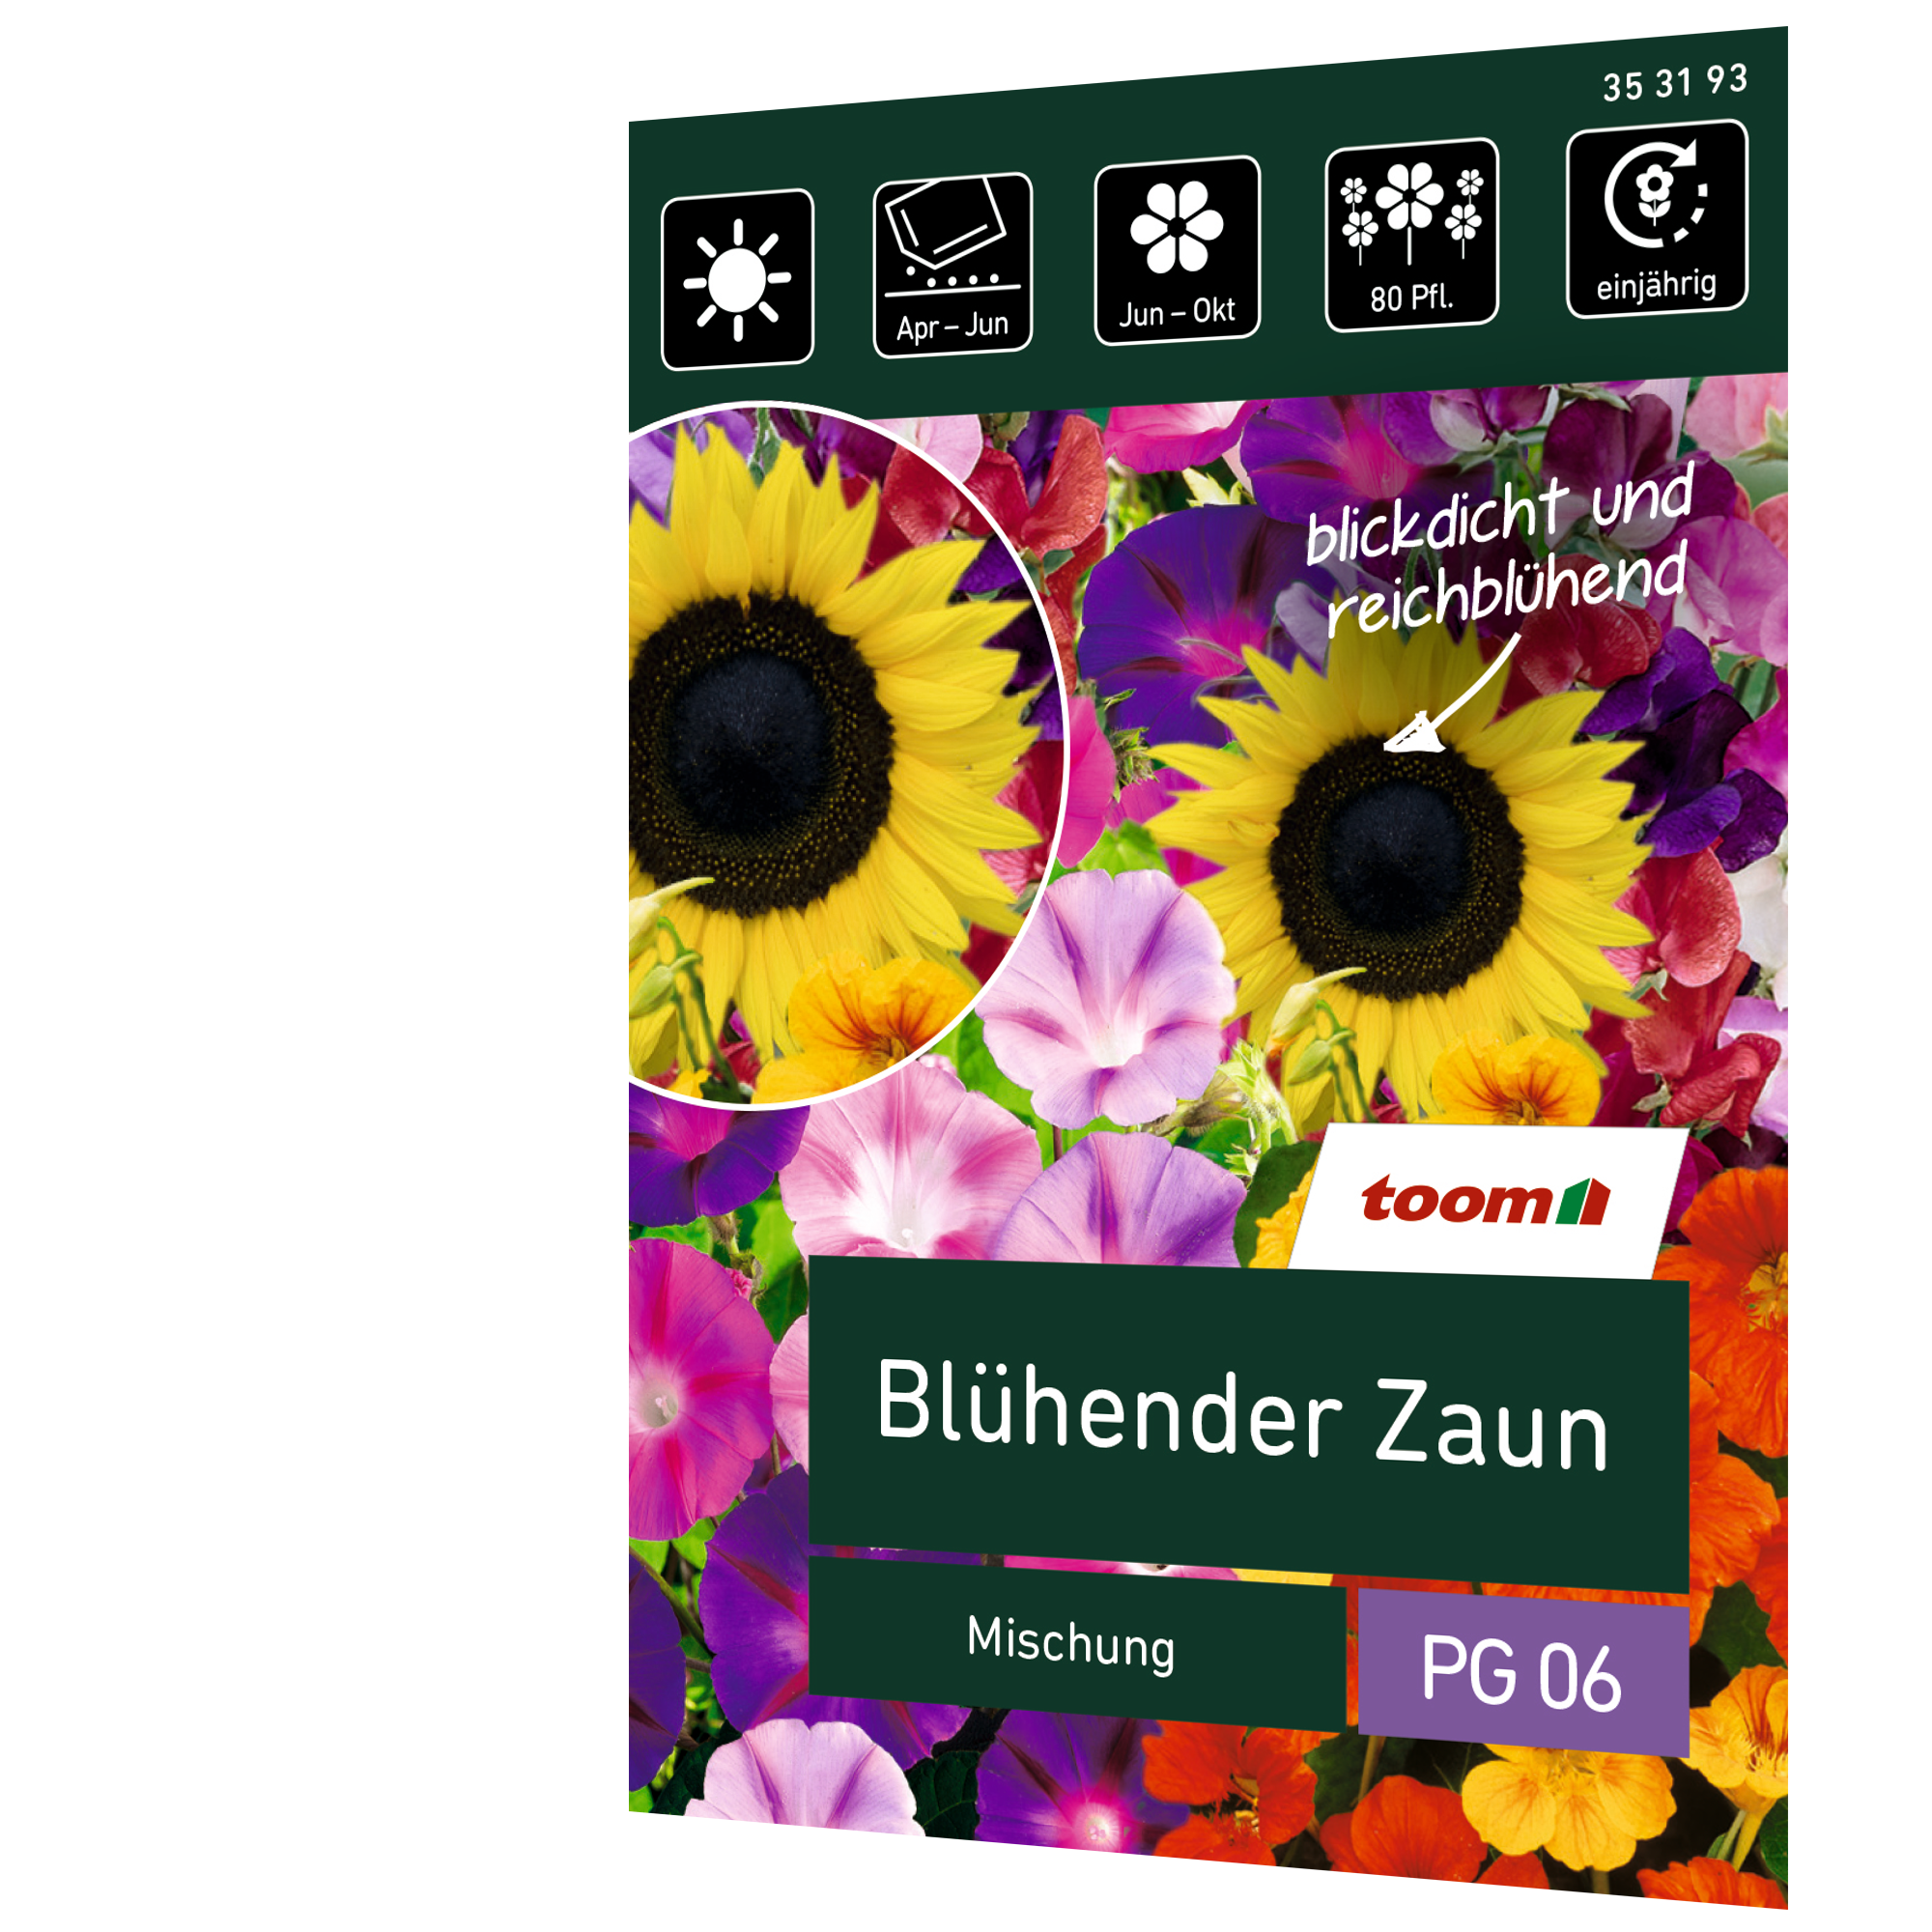 Blumenmischung 'Blühender Zaun' + product picture